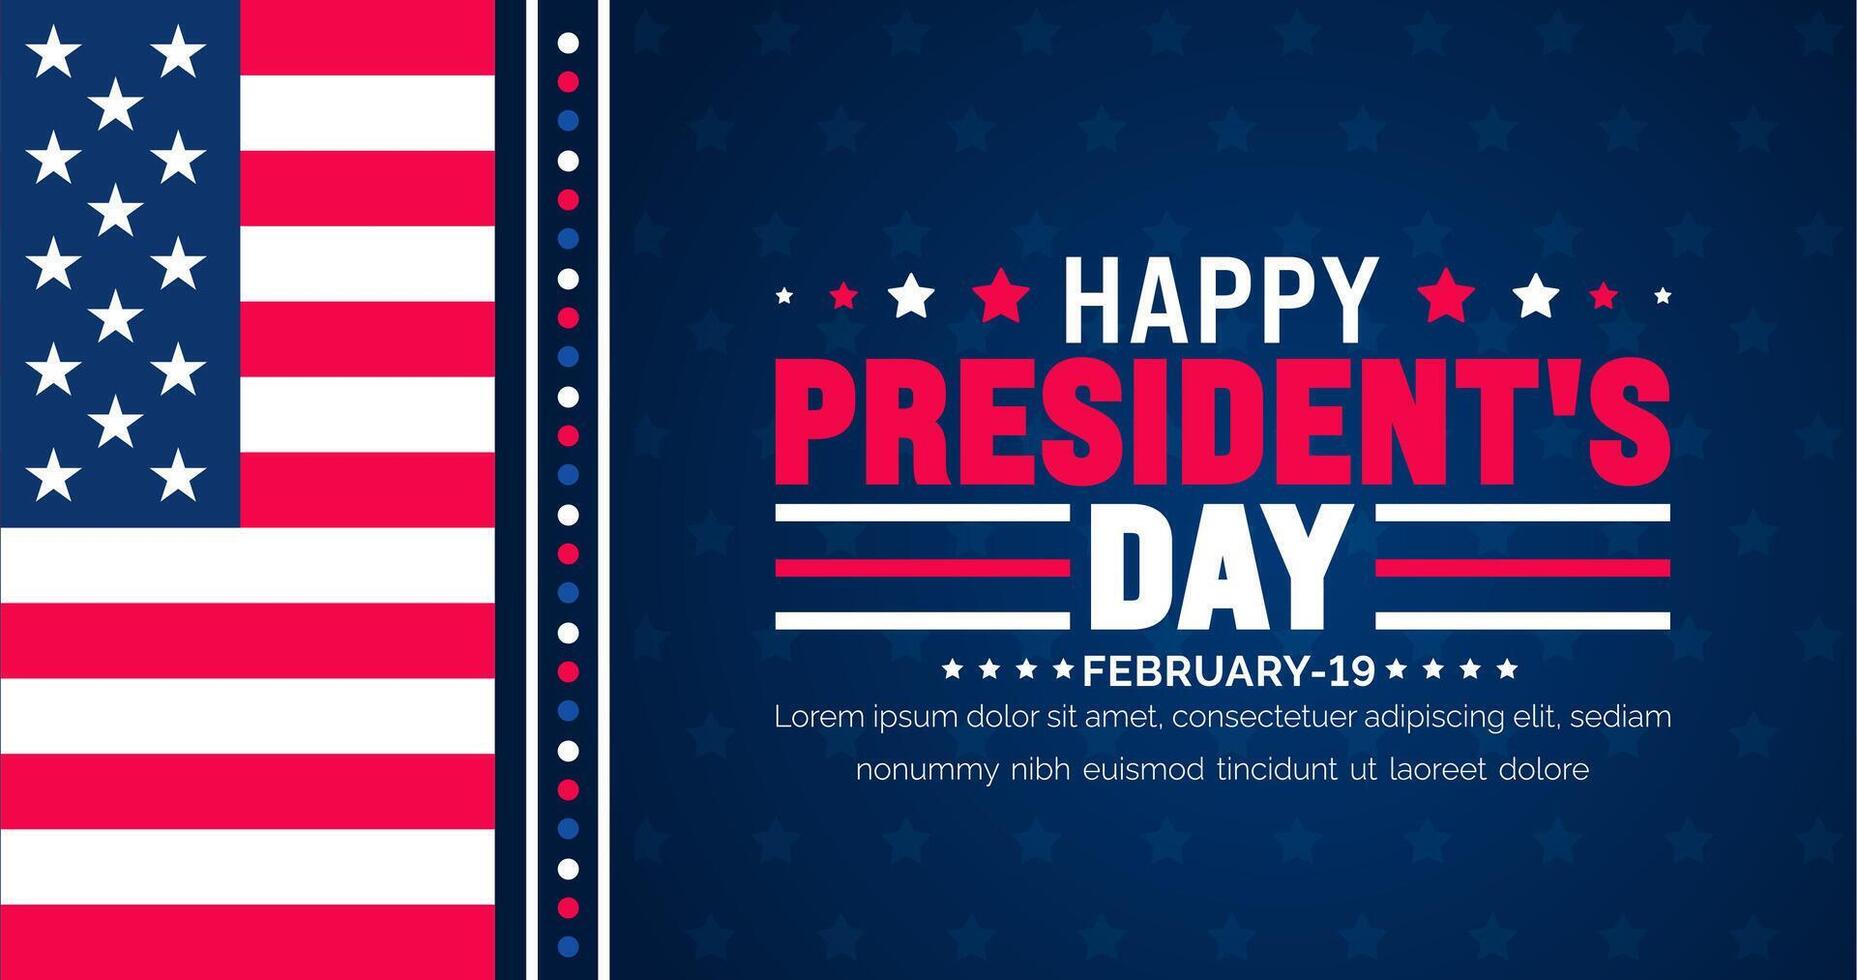 Februar 19 ist des Präsidenten Tag Hintergrund Vorlage mit USA Flagge Thema Konzept. Urlaub Konzept. amerikanisch Flagge Design Präsident Tag gefeiert auf das dritte Montag von Februar jeder Jahr. vektor